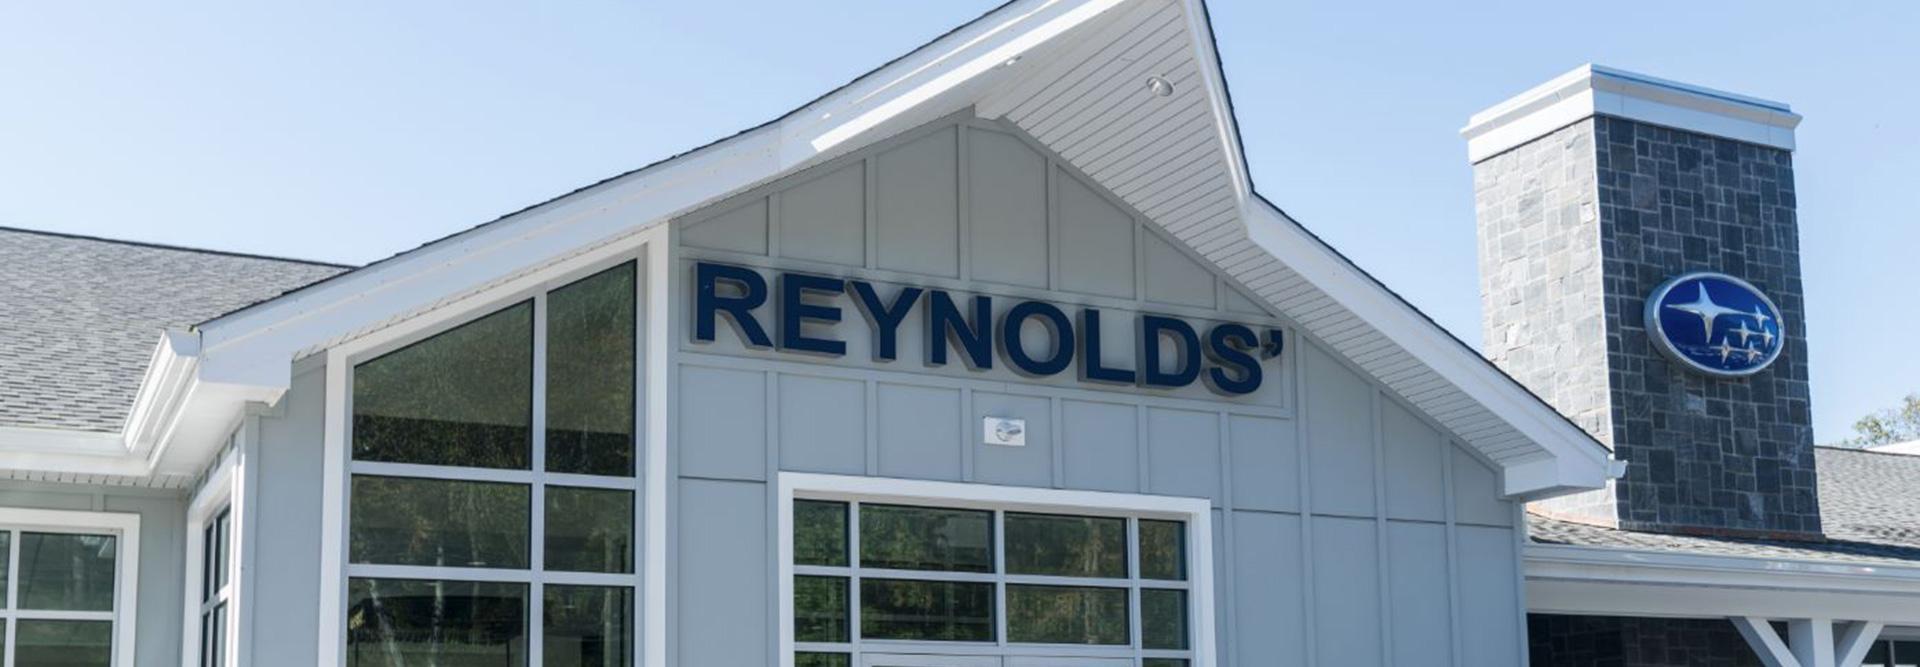 Reynolds 1